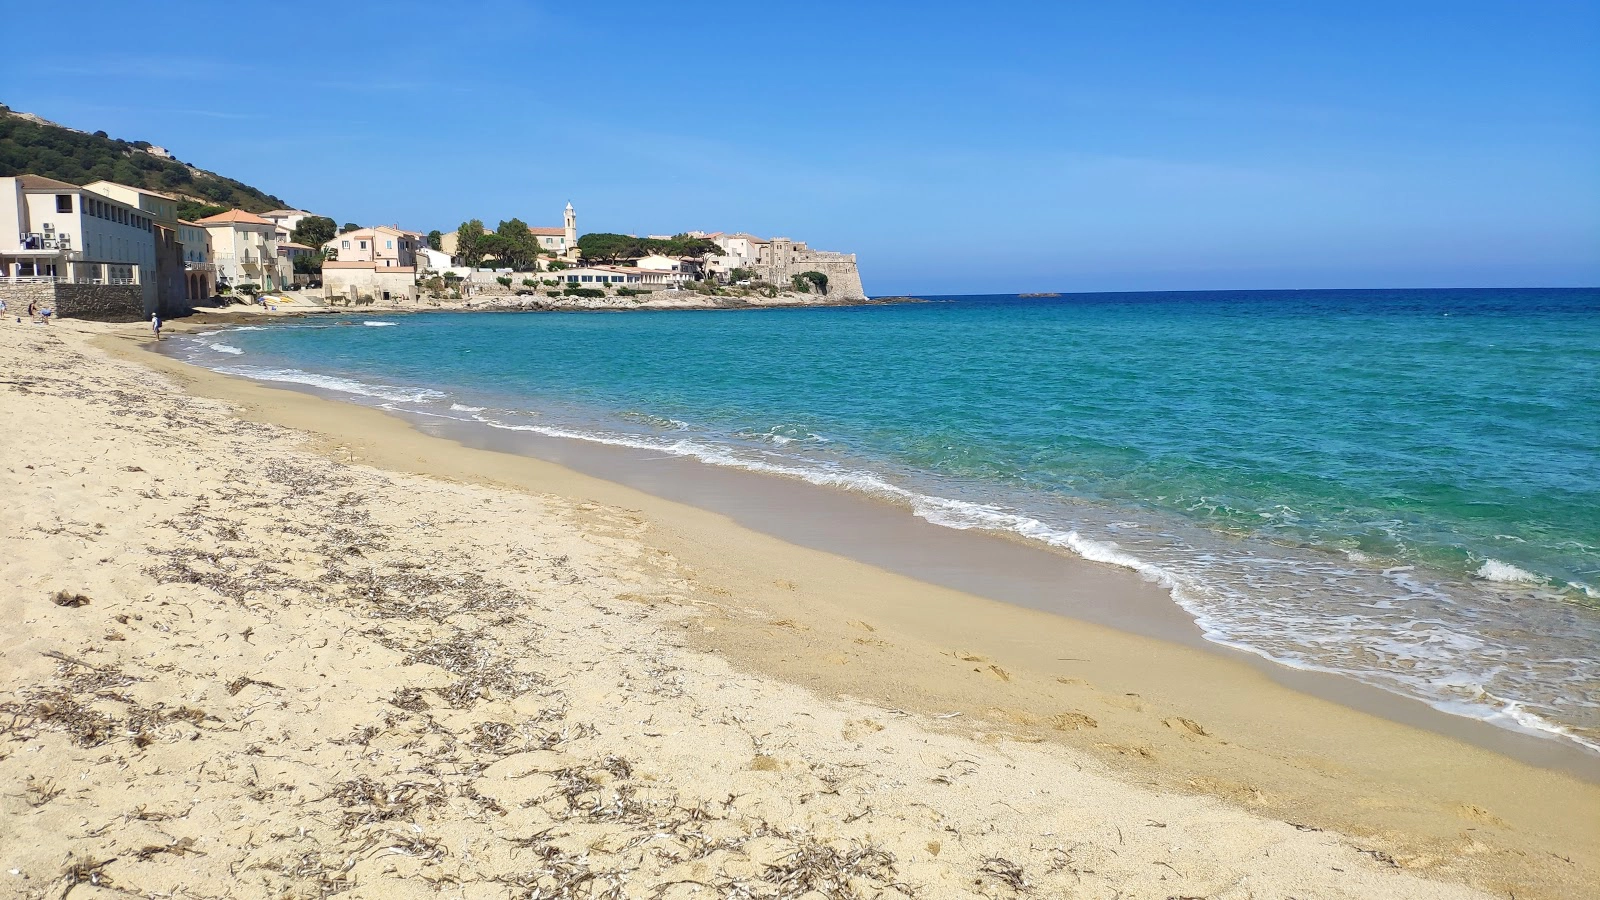  Aregno  strand - Corsica